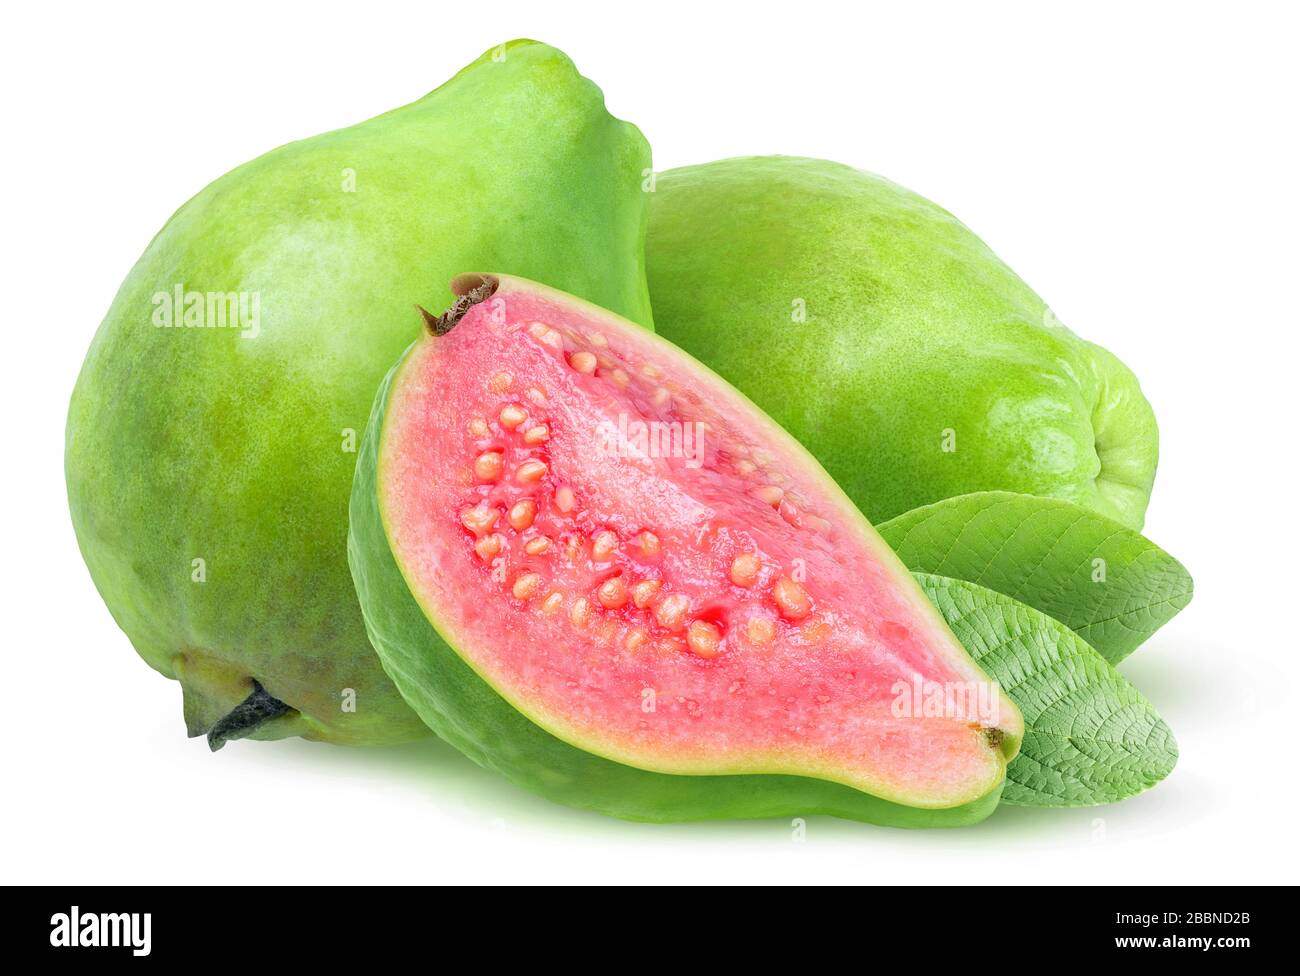 Isolierte Guava-Früchte. Drei grüne Guavas mit rosafarbenem Fleisch isoliert auf weißem Hintergrund Stockfoto